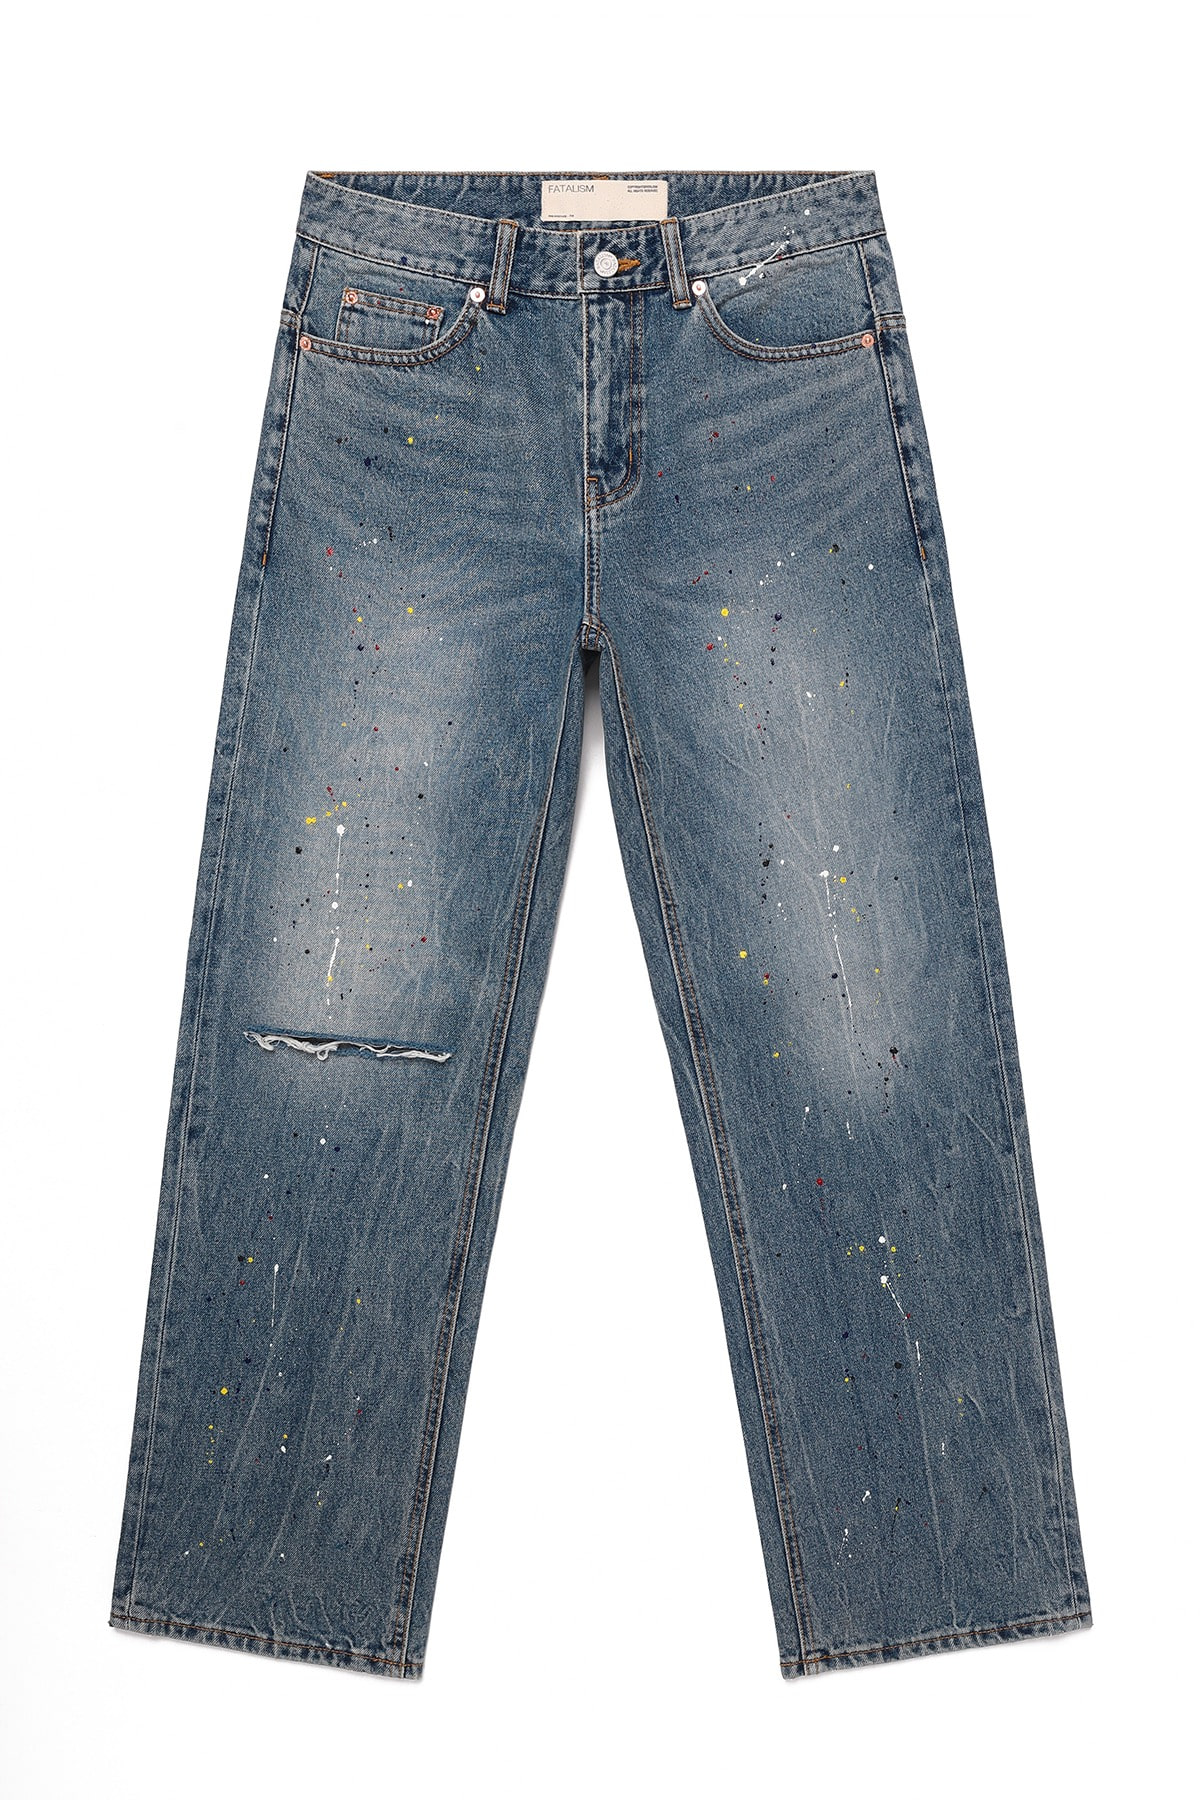 #0240 Carpenter paint jeans